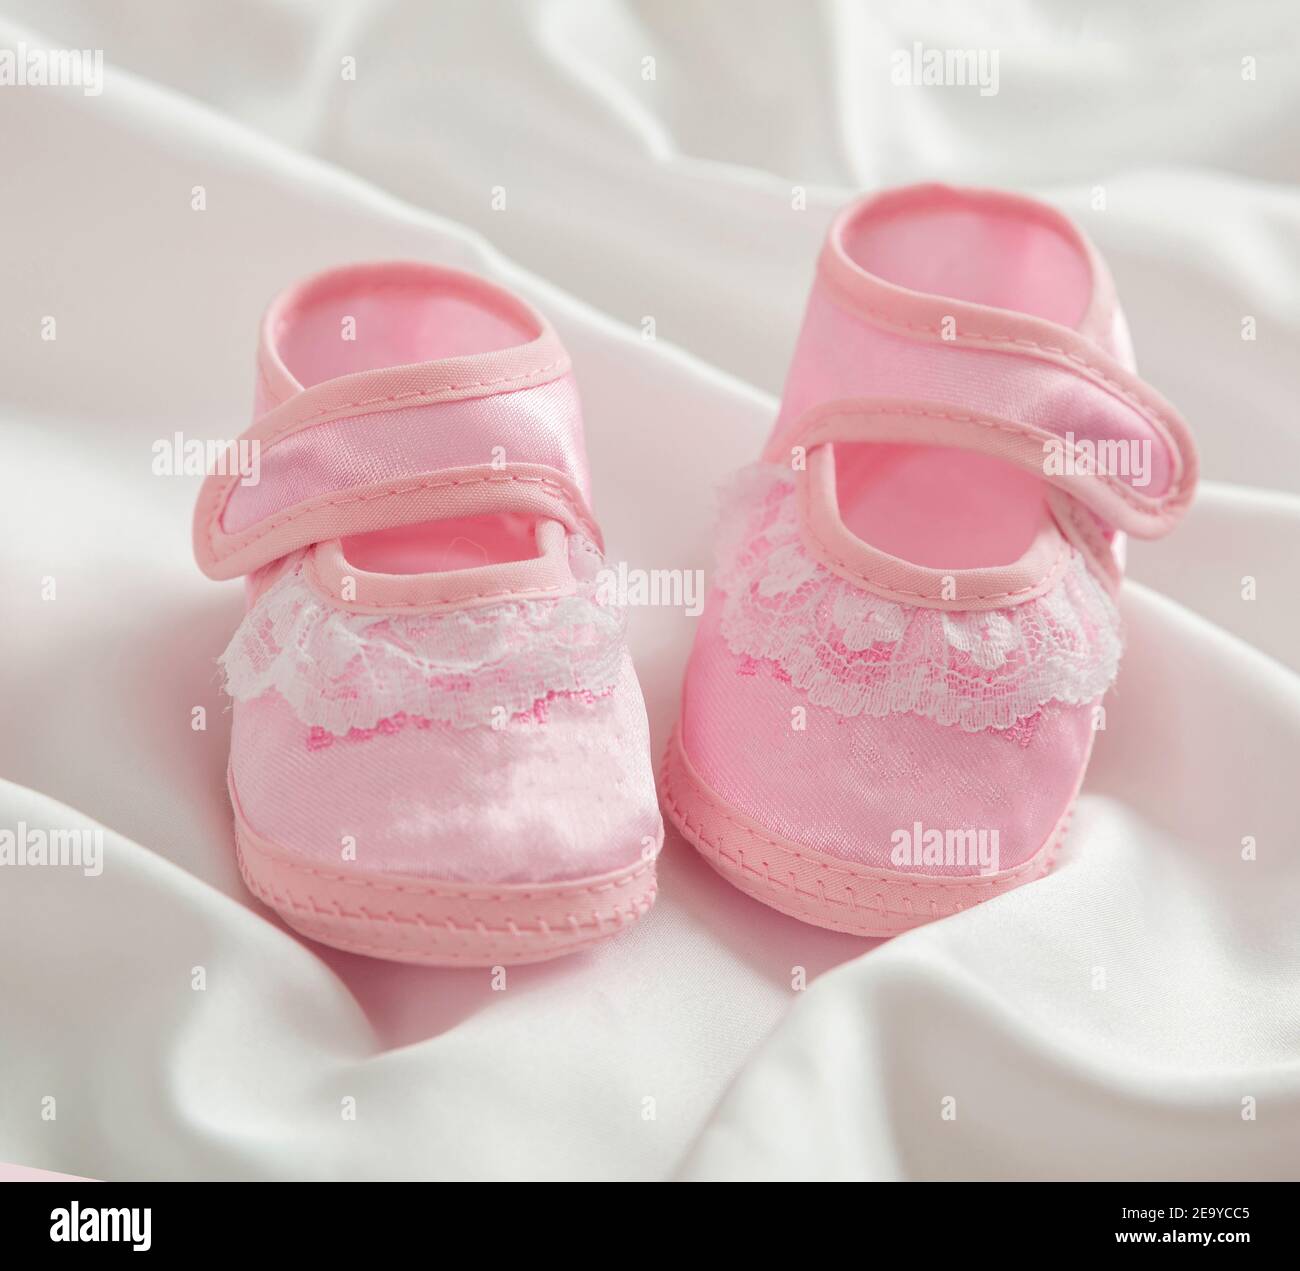  Zapatos para bebés recién nacidos, niñas y niños, zapatillas  deportivas de malla de cuero para niños pequeños, zapatos deportivos para  bebés y niñas, Rosado : Ropa, Zapatos y Joyería